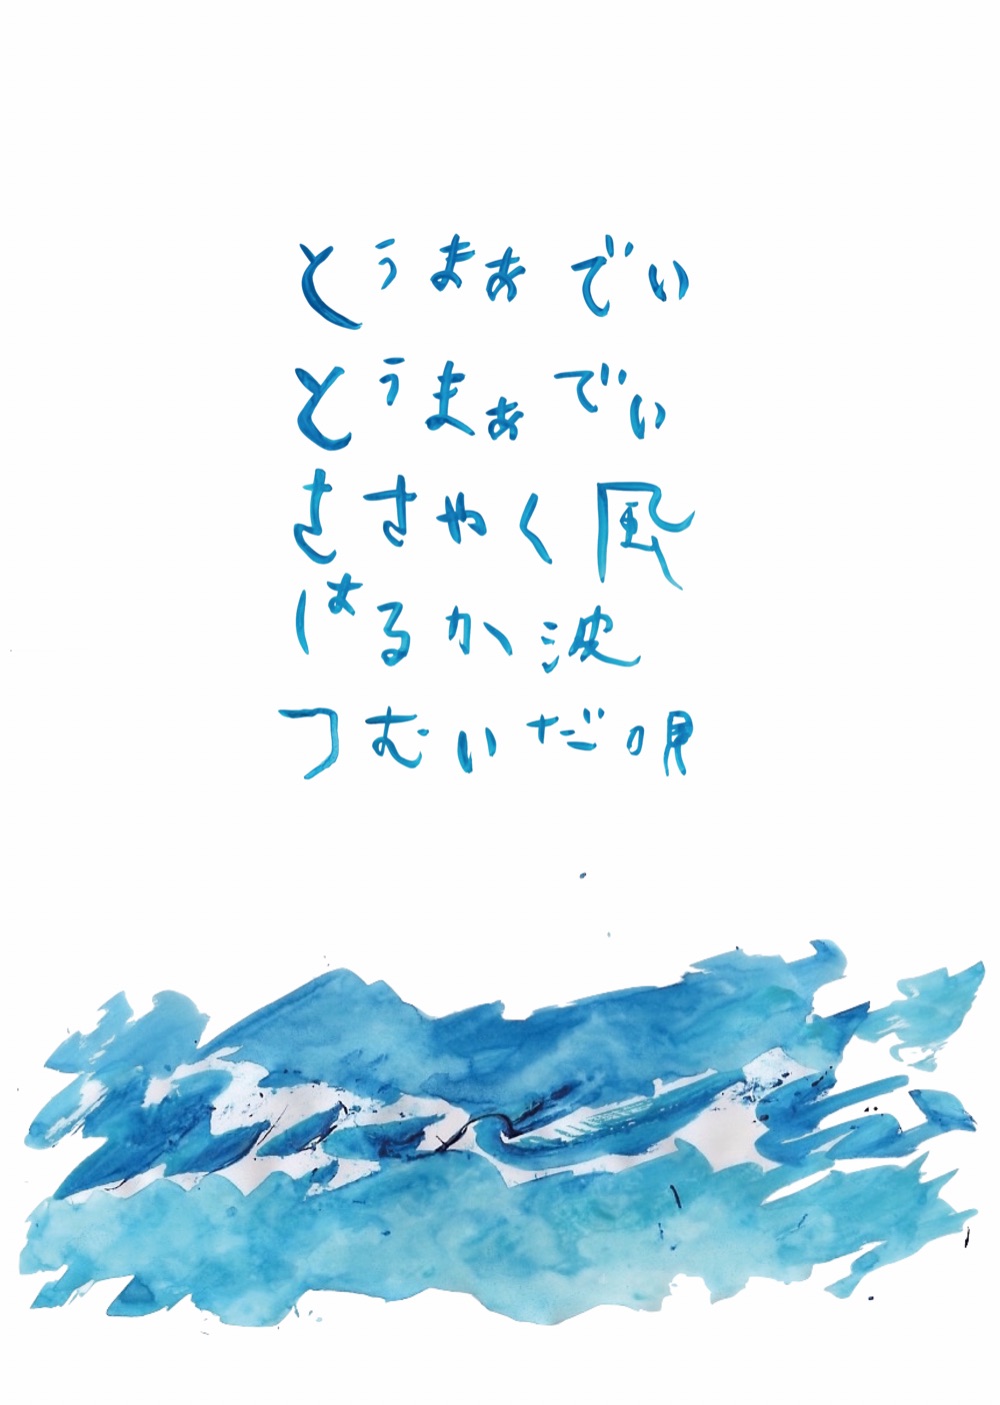 関連企画として初演時に原田さんが書き下ろしたテーマ曲「とぅ まぁ でぃ」を公募で集まった方々と共に沖縄で収録しました。